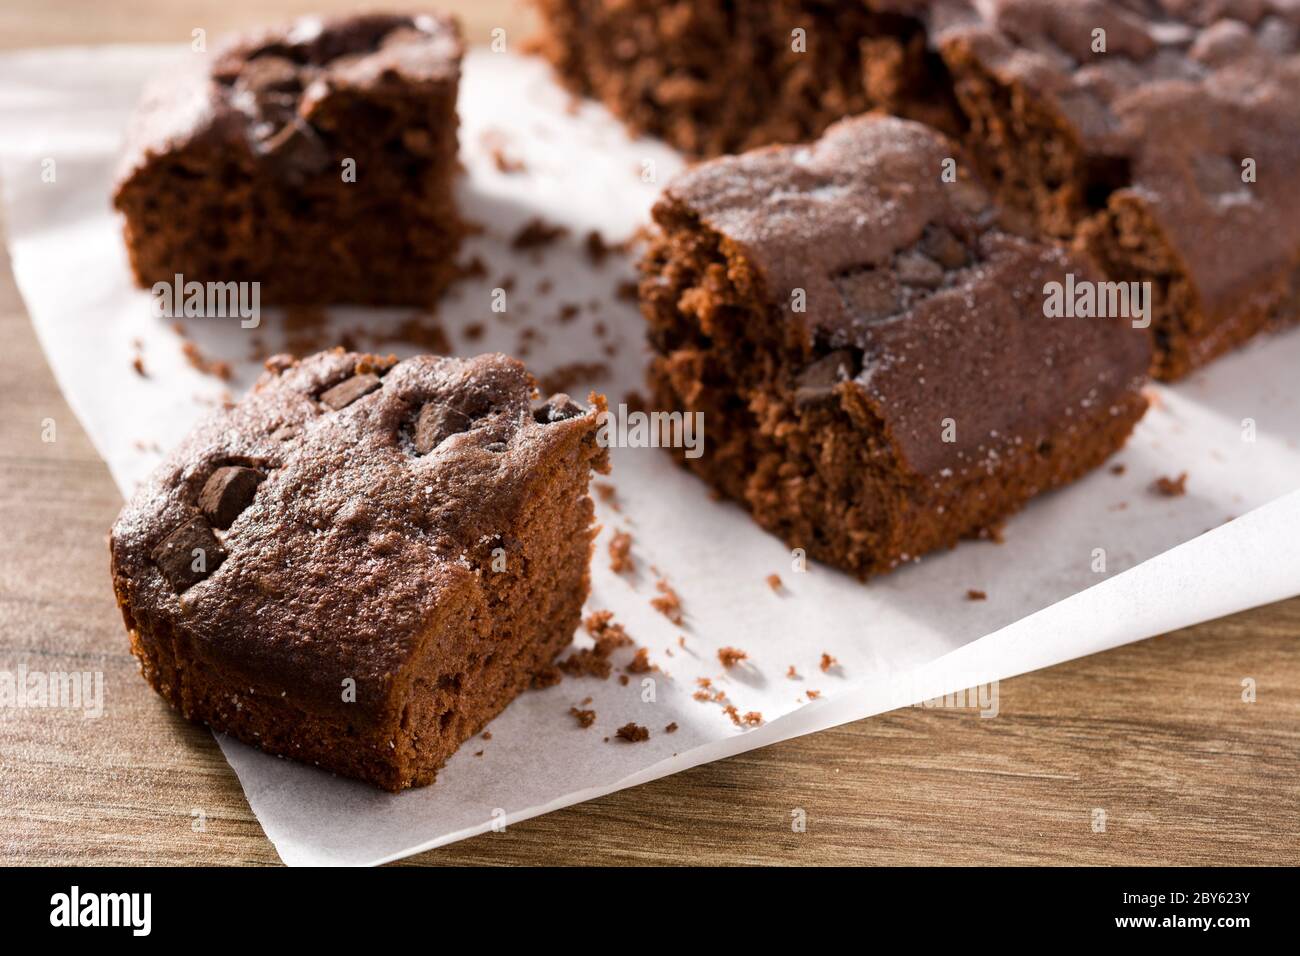 Tranche de gâteau éponge au chocolat sur une table en bois Banque D'Images